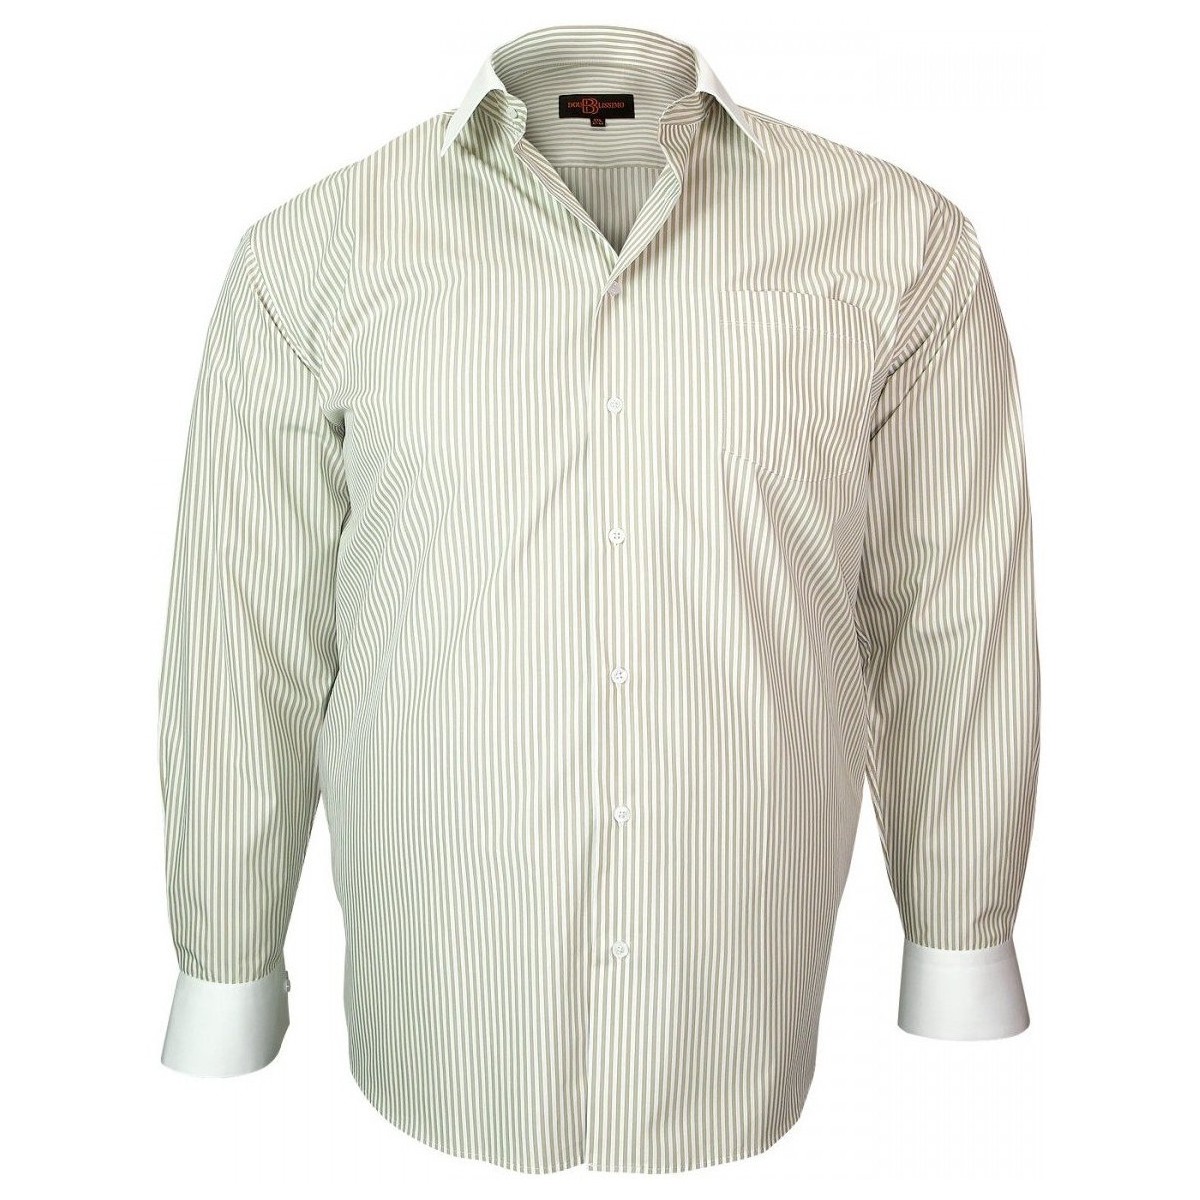 Vêtements Homme Chemises manches longues Doublissimo chemise col blanc smart beige Beige